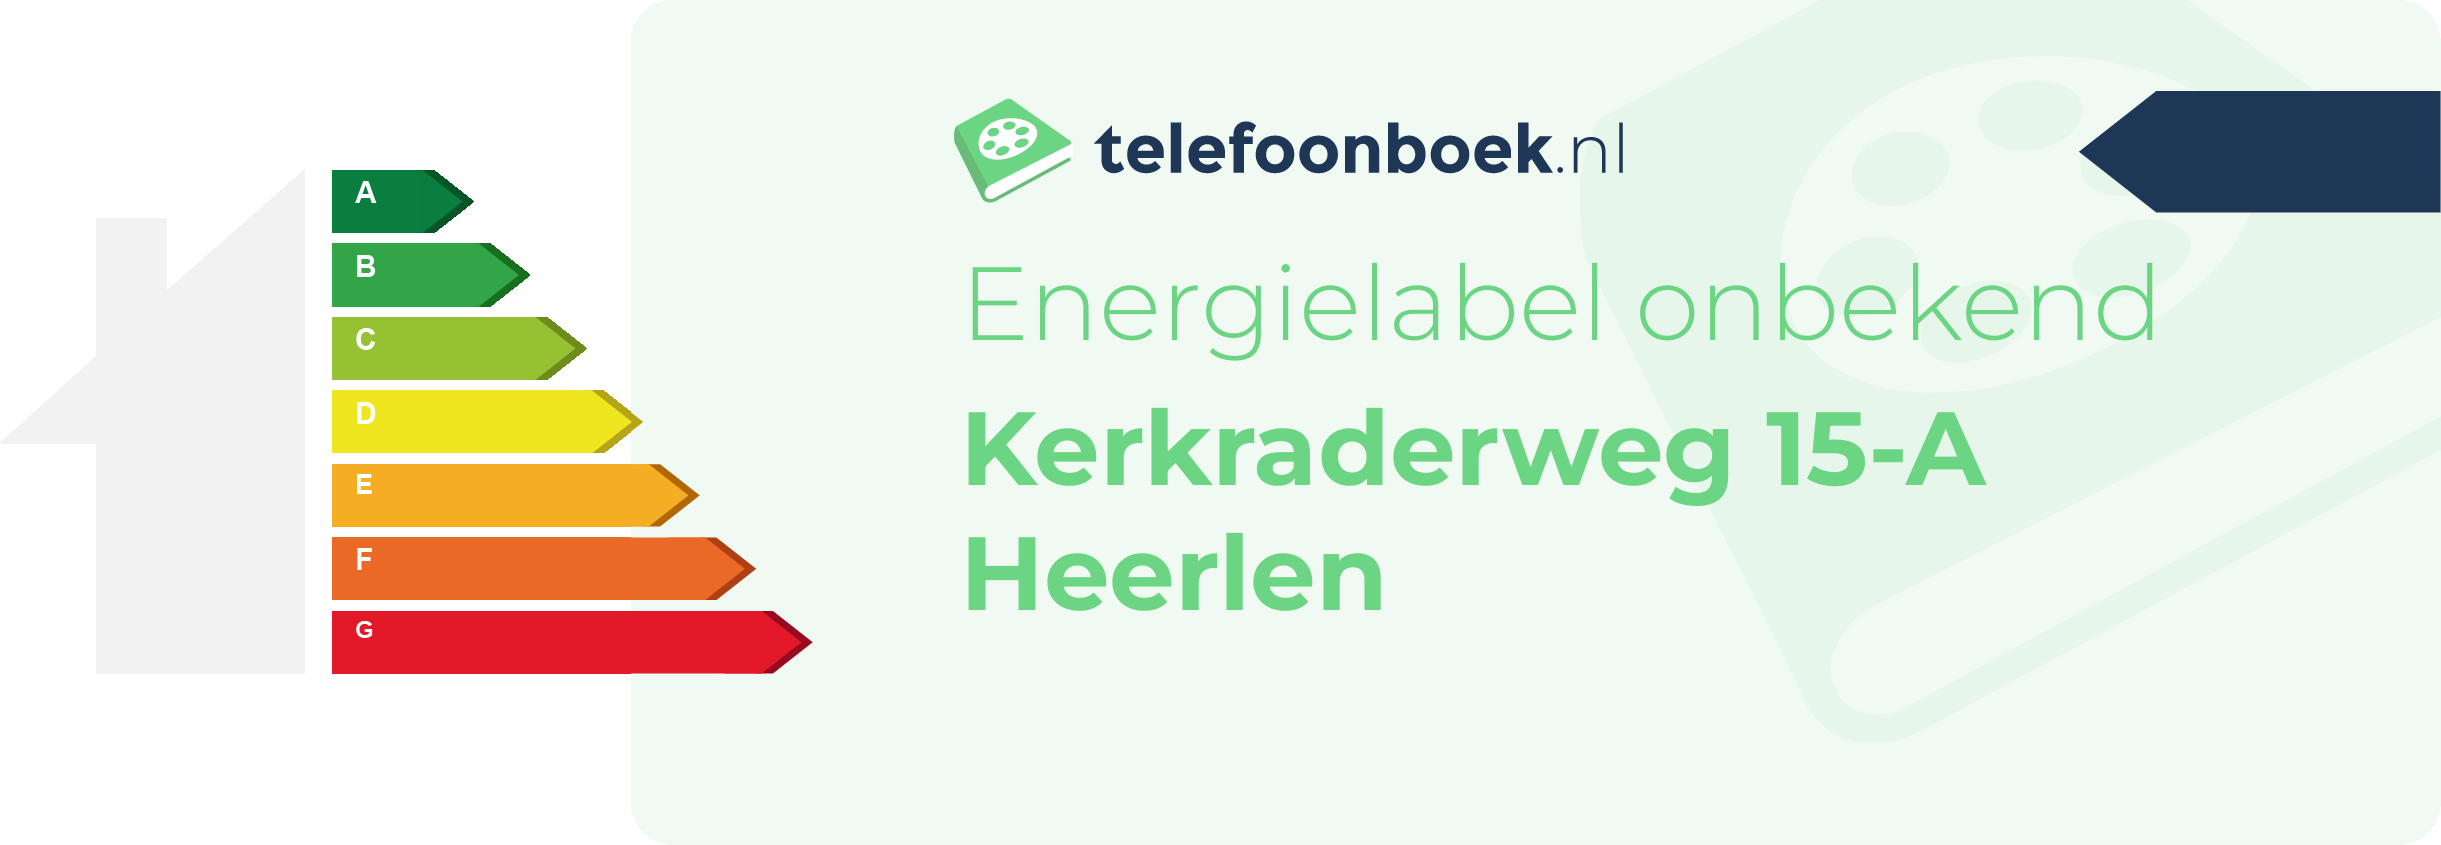 Energielabel Kerkraderweg 15-A Heerlen